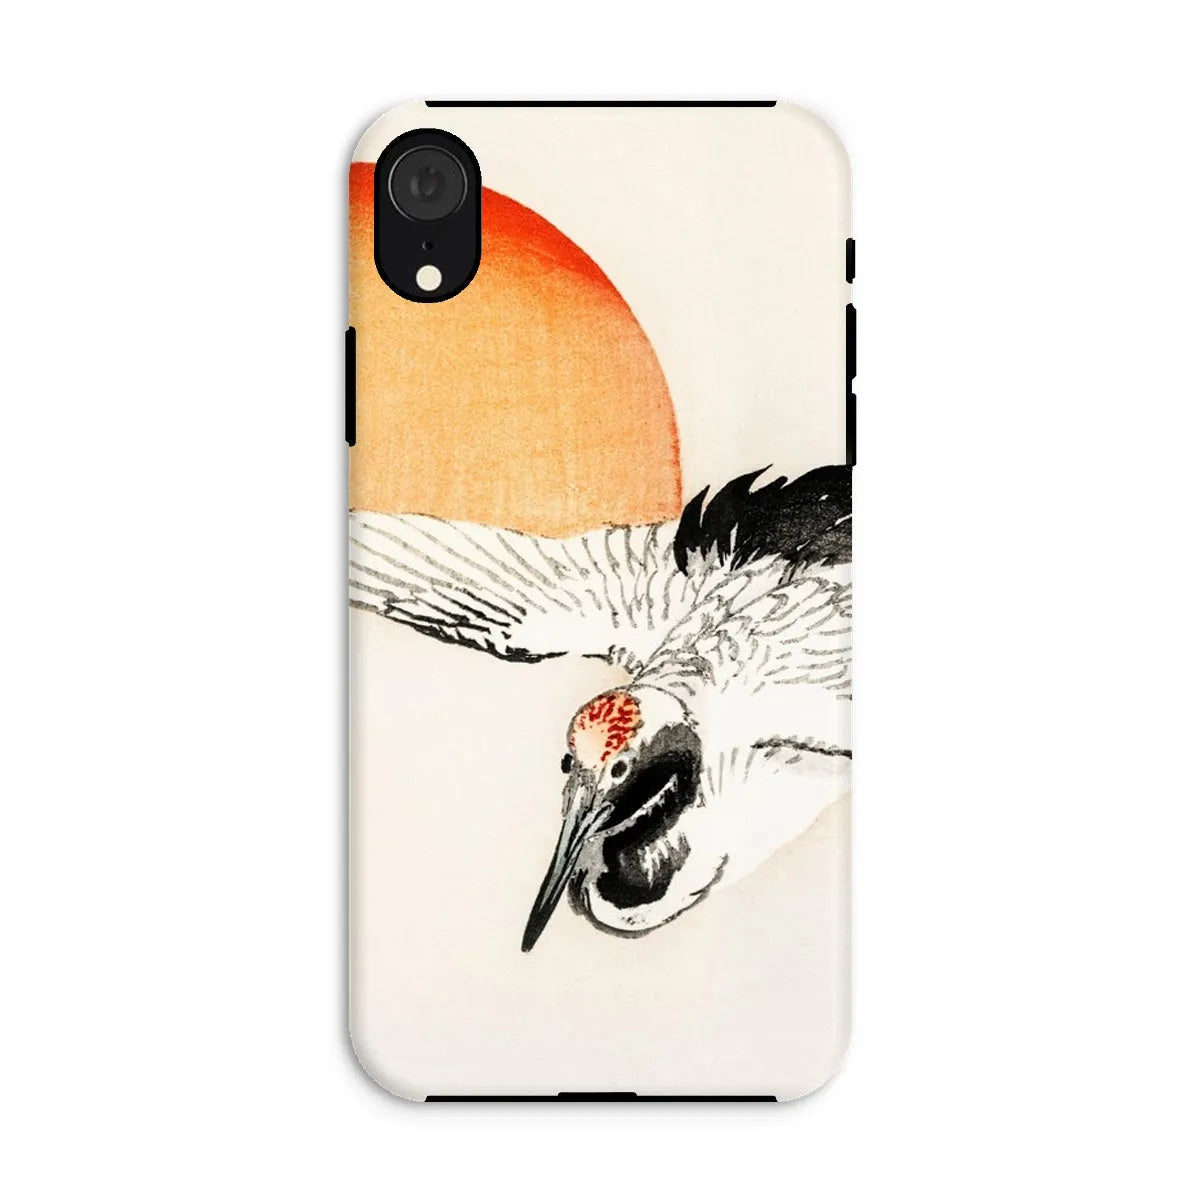 Flying Crane Japanese Aesthetic Phone Case - Kōno Bairei - Iphone Xr / Matte - Mobile Phone Cases - Aesthetic Art